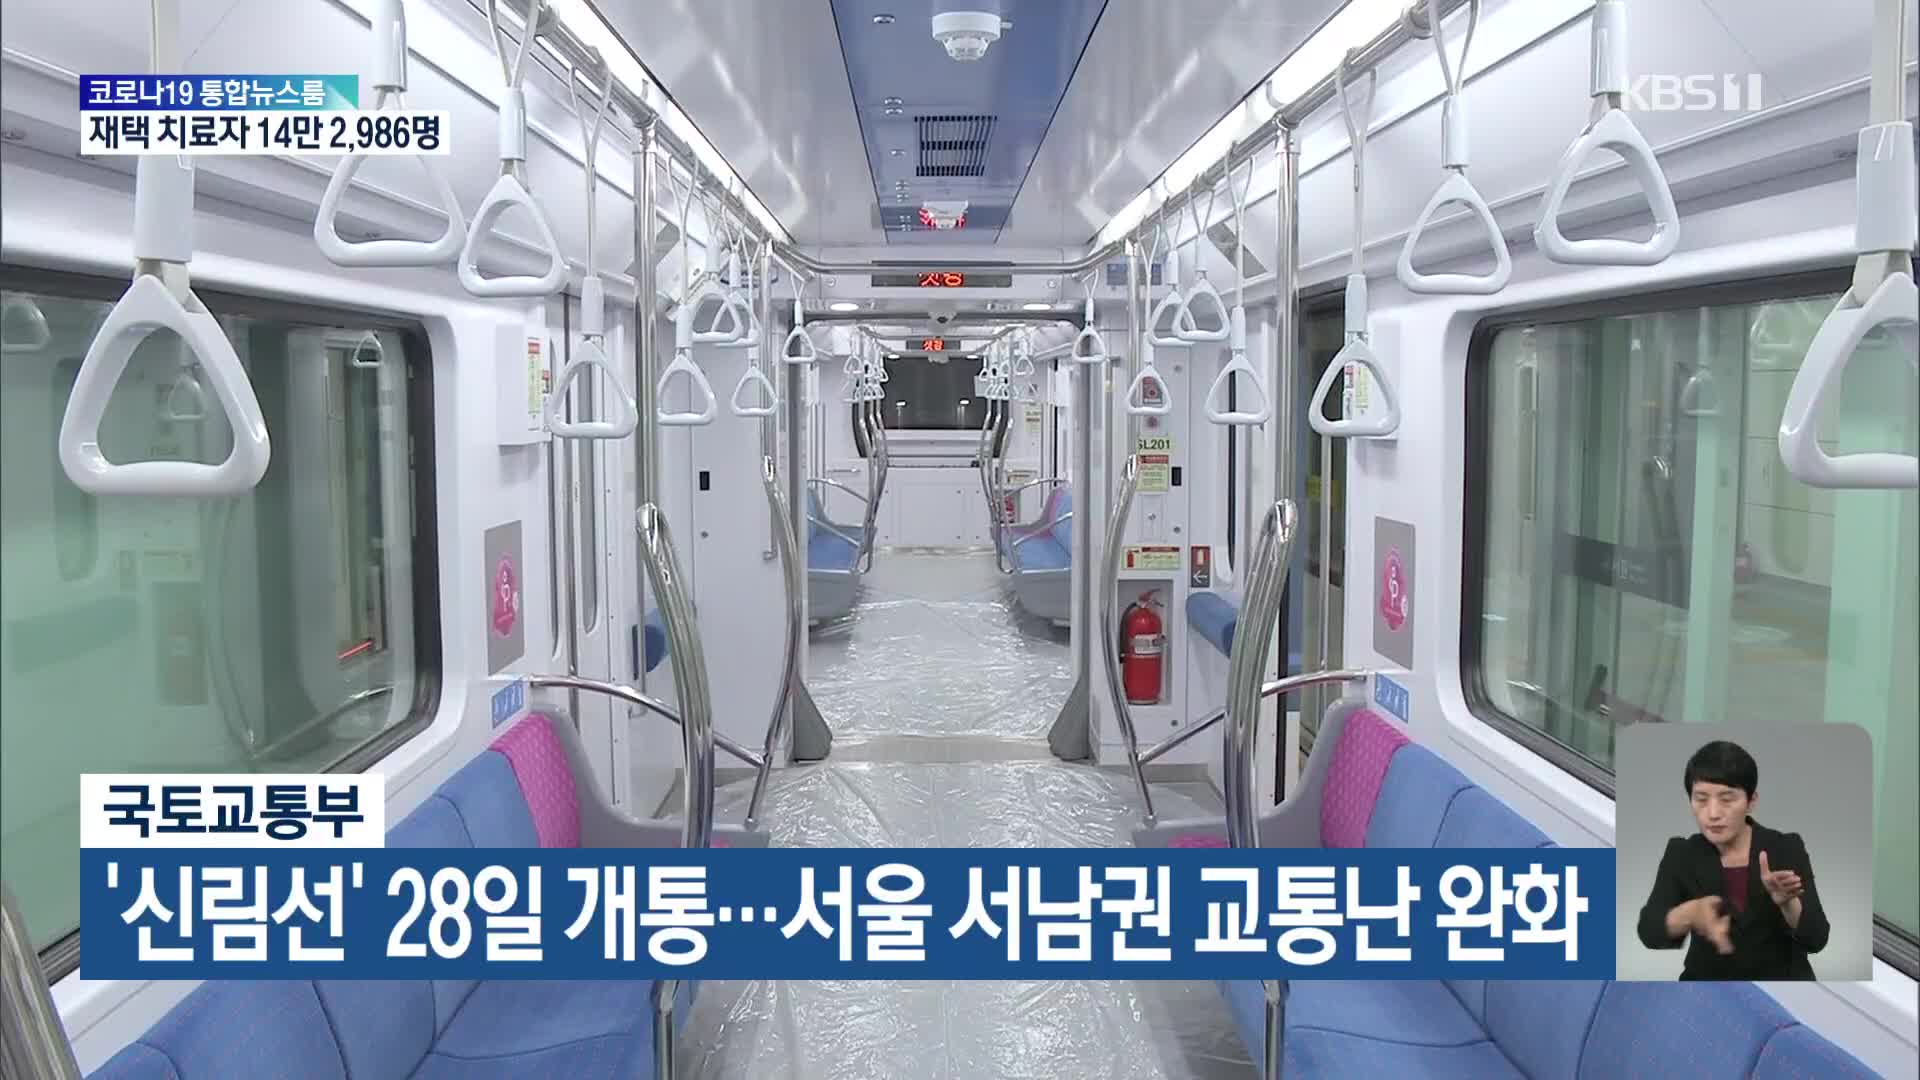 국토교통부, ‘신림선’ 28일 개통…서울 서남권 교통난 완화